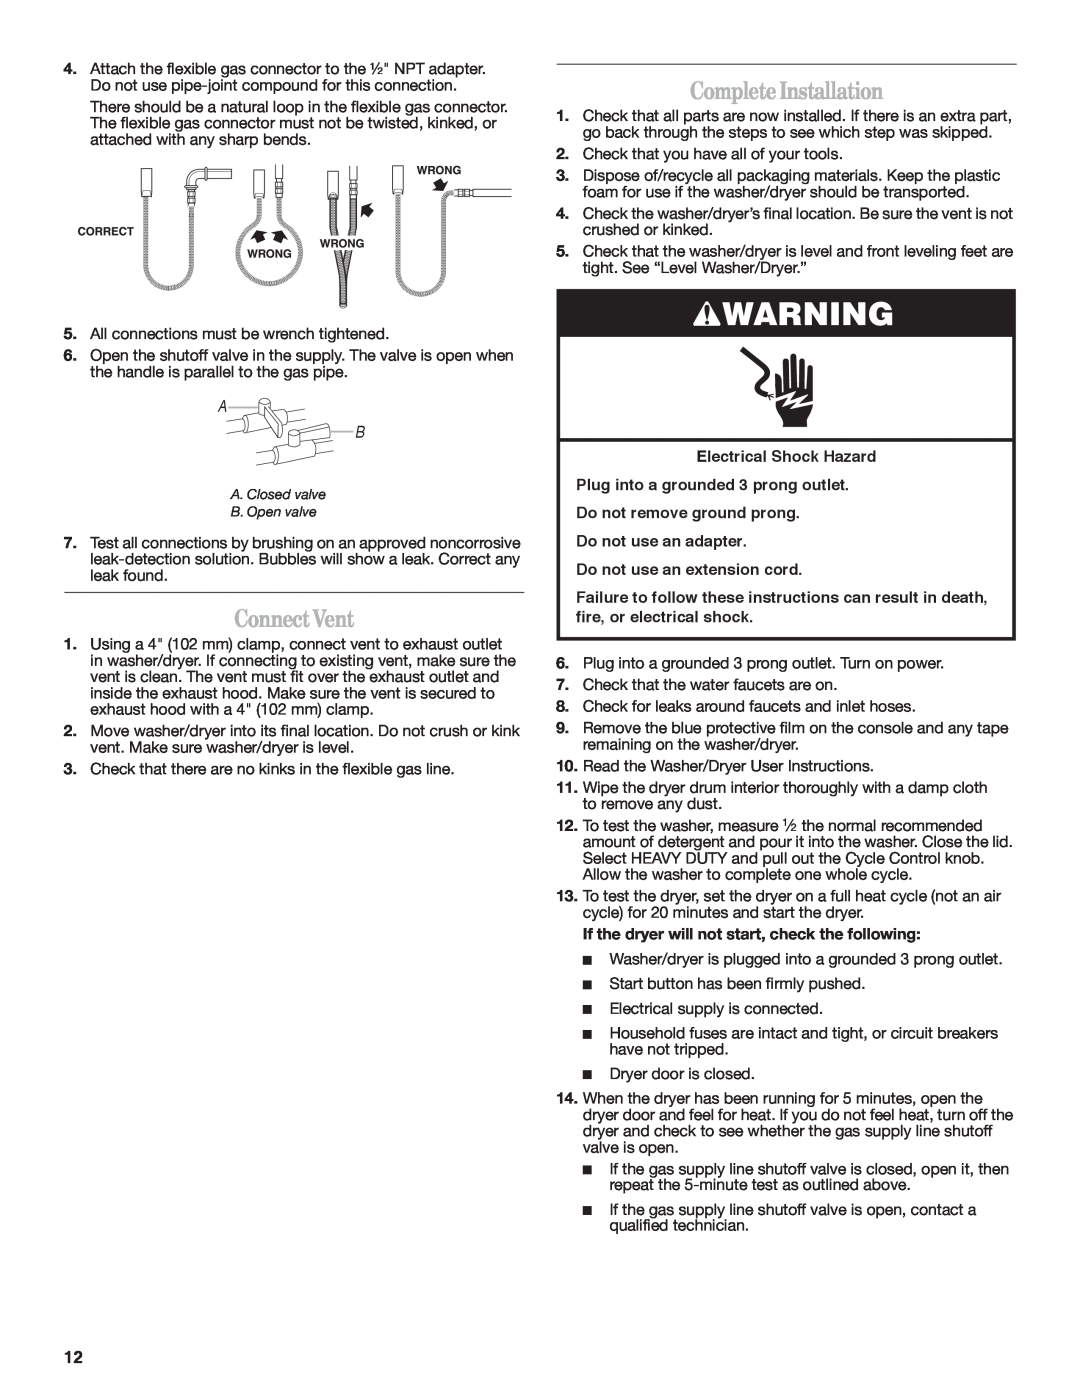 Whirlpool Gas Washer/Dryer installation instructions ConnectVent, CompleteInstallation, Electrical Shock Hazard 